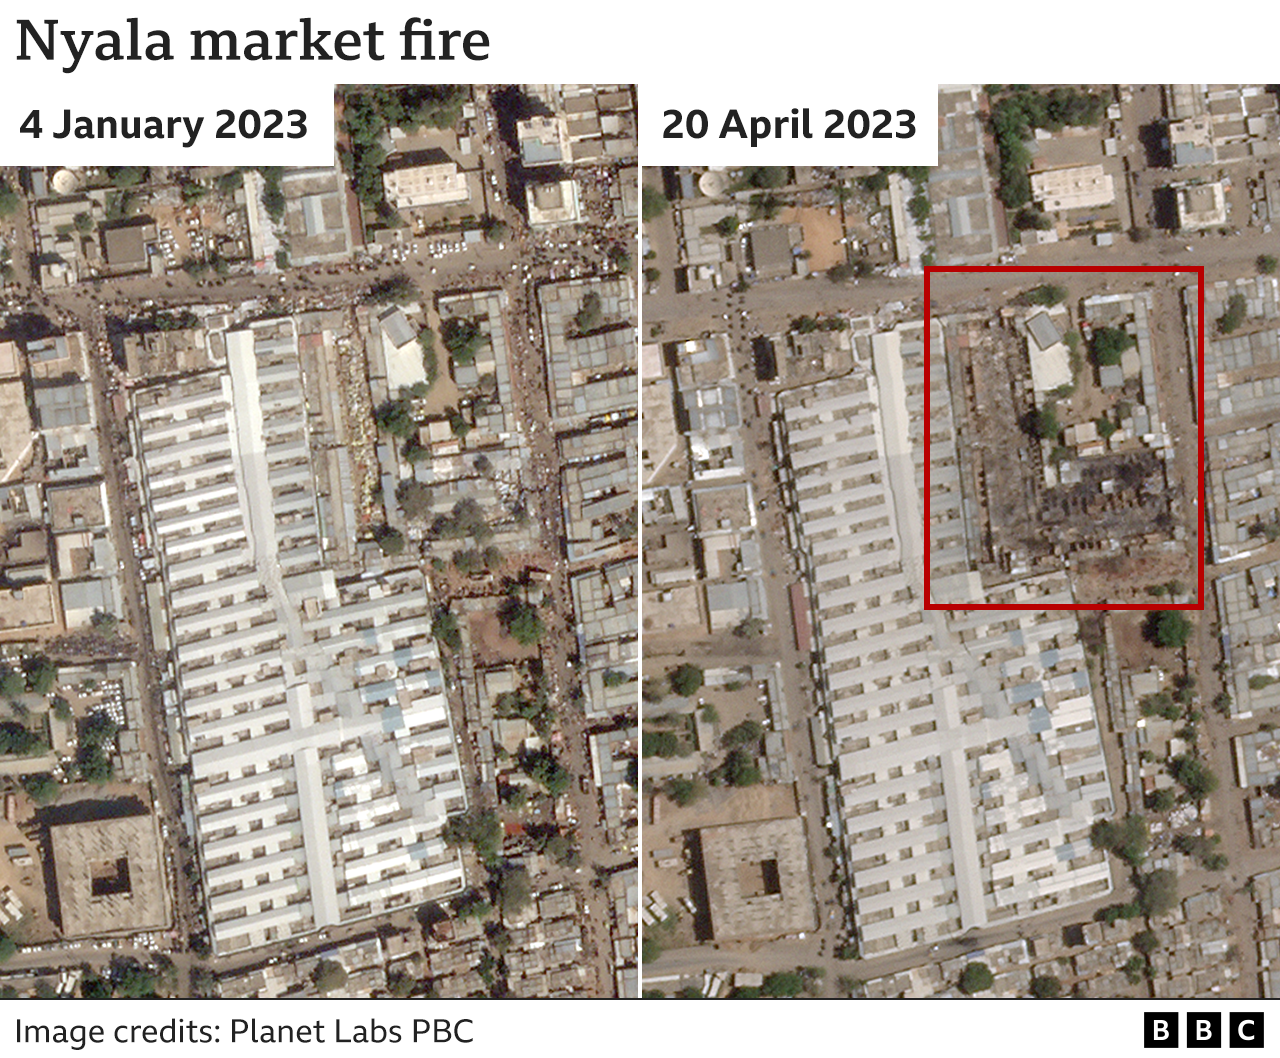 Спутниковый снимок показывает ущерб от пожара на рынке в Ньяле